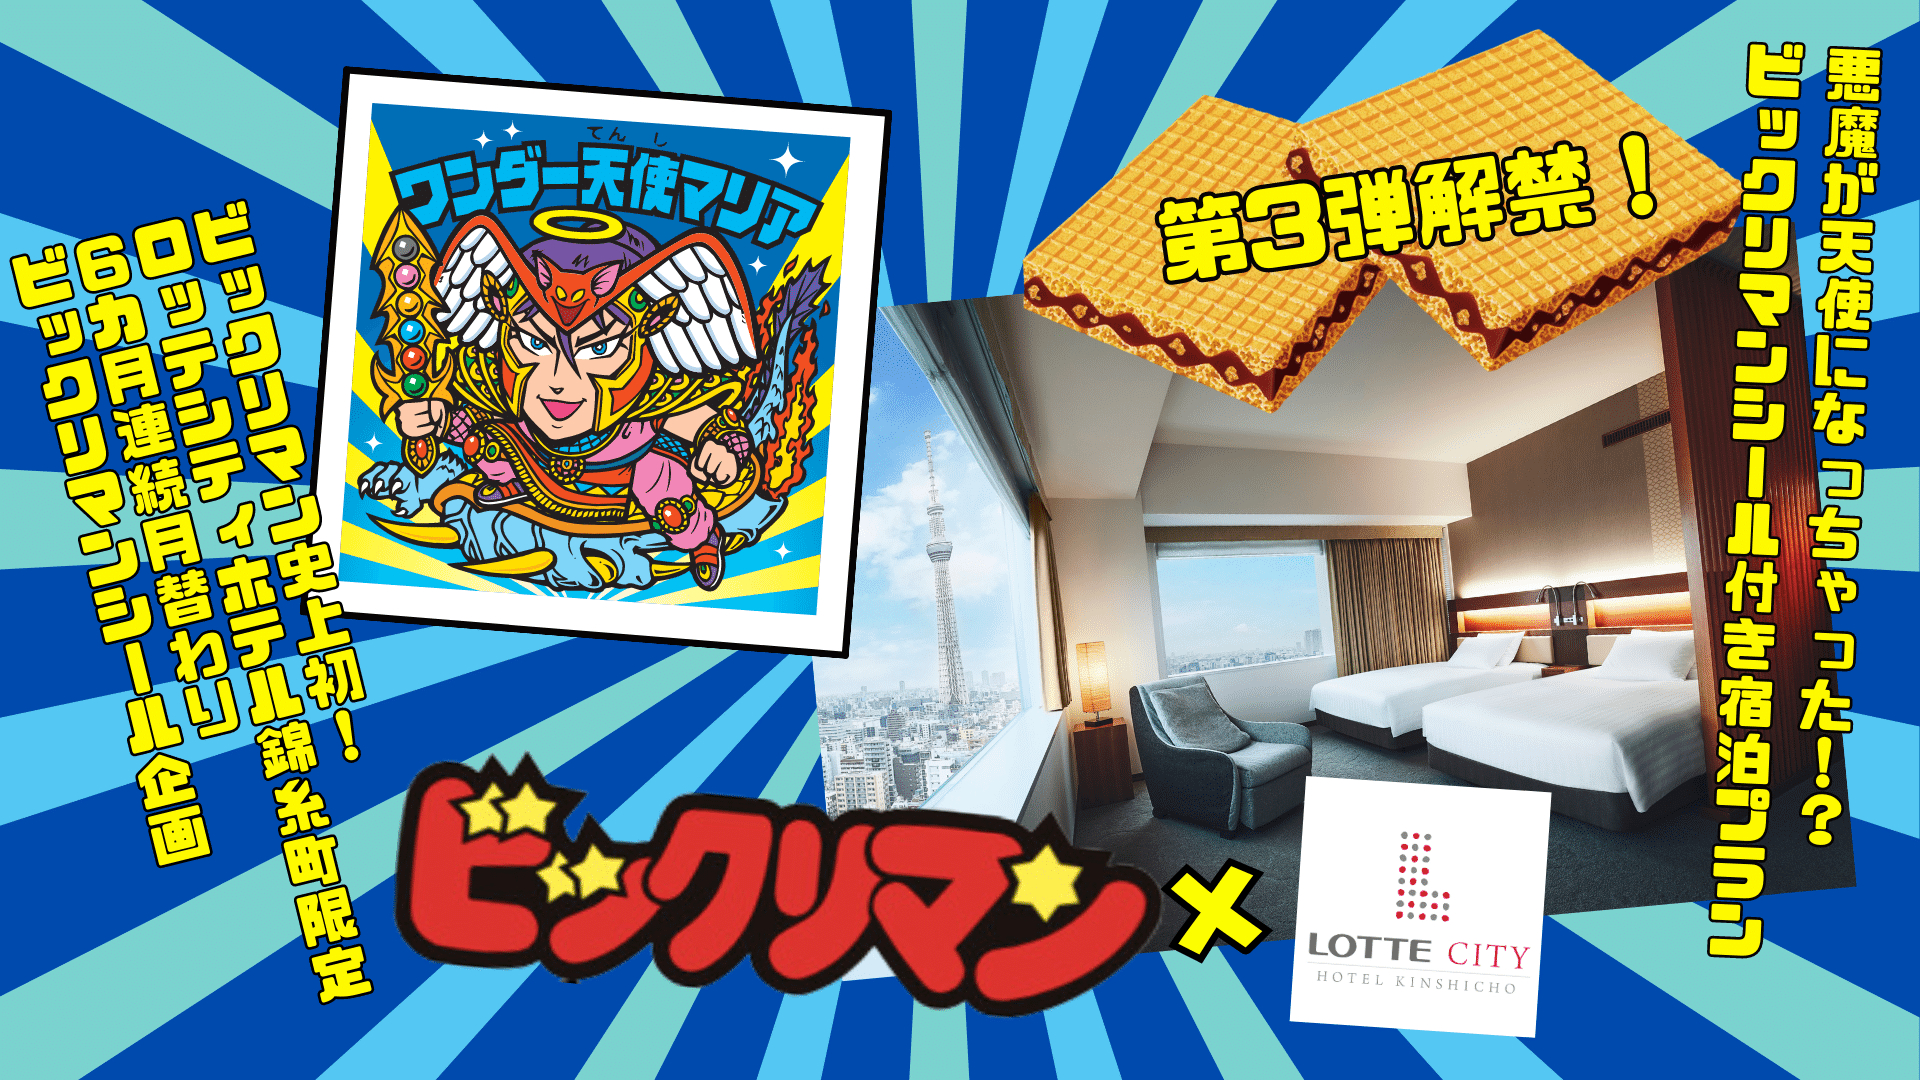 ロッテシティホテル錦糸町がビックリマンとコラボ、限定シール